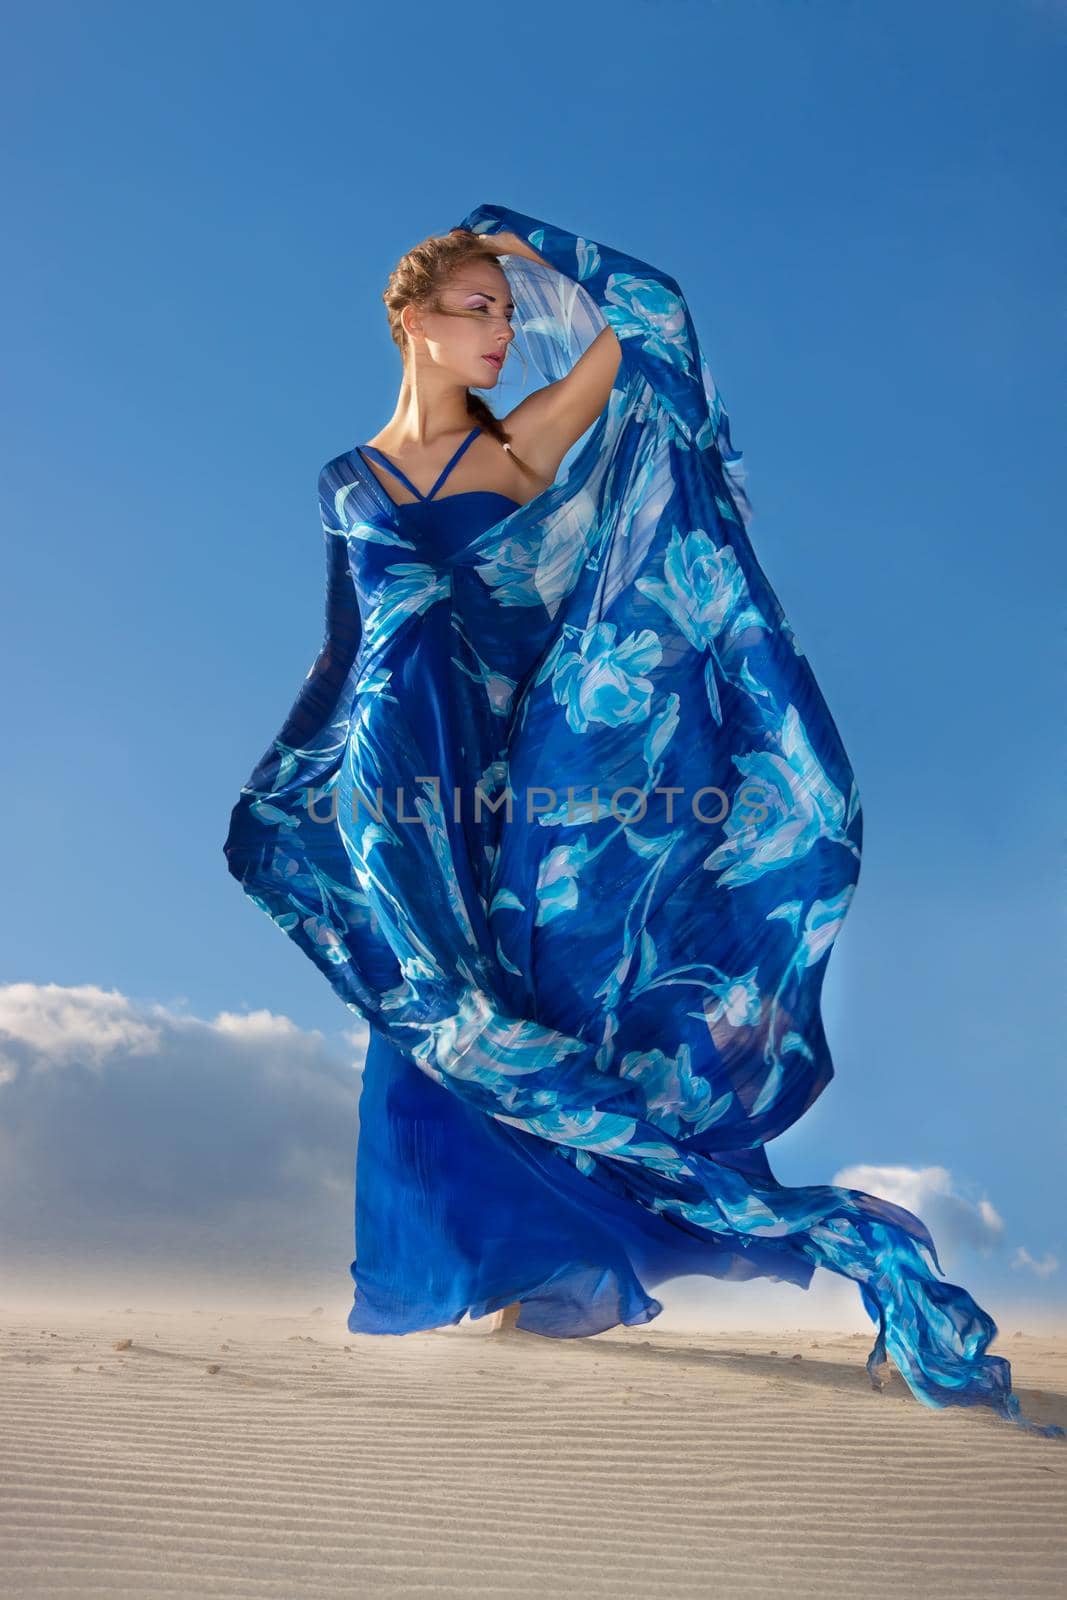 beauty woman in blue dress on the desert by Julenochek